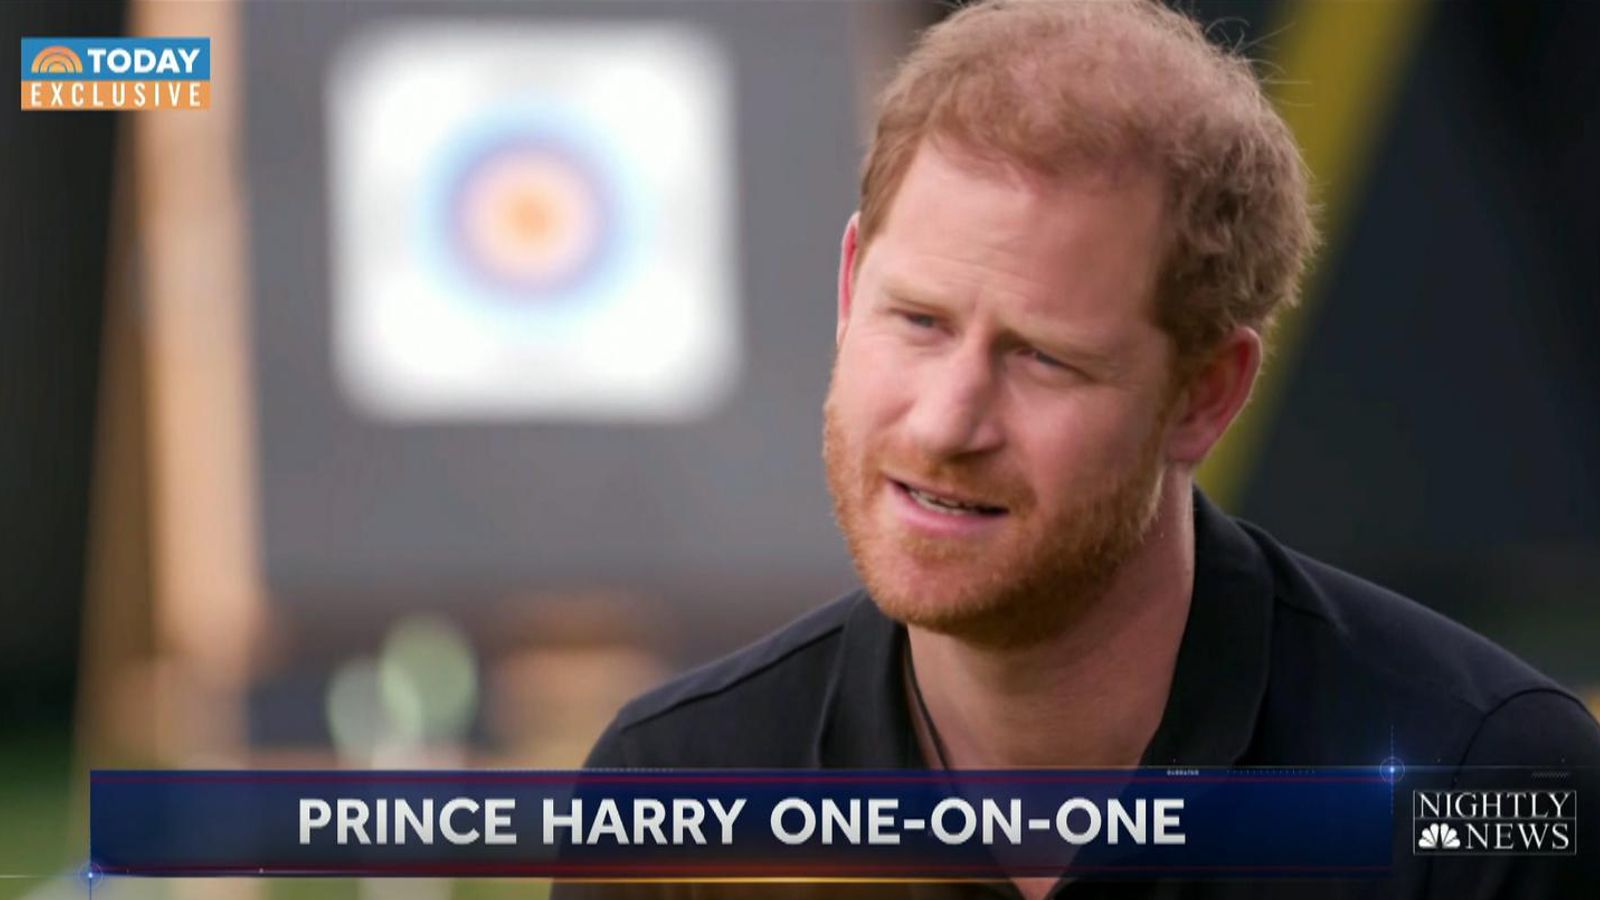 Książę Harry ujawnia, że ​​tęskni za swoją rodziną w Wielkiej Brytanii, a praca w domu była „naprawdę trudna” w wywiadzie dla Hody Kotb |  Wiadomości z Wielkiej Brytanii